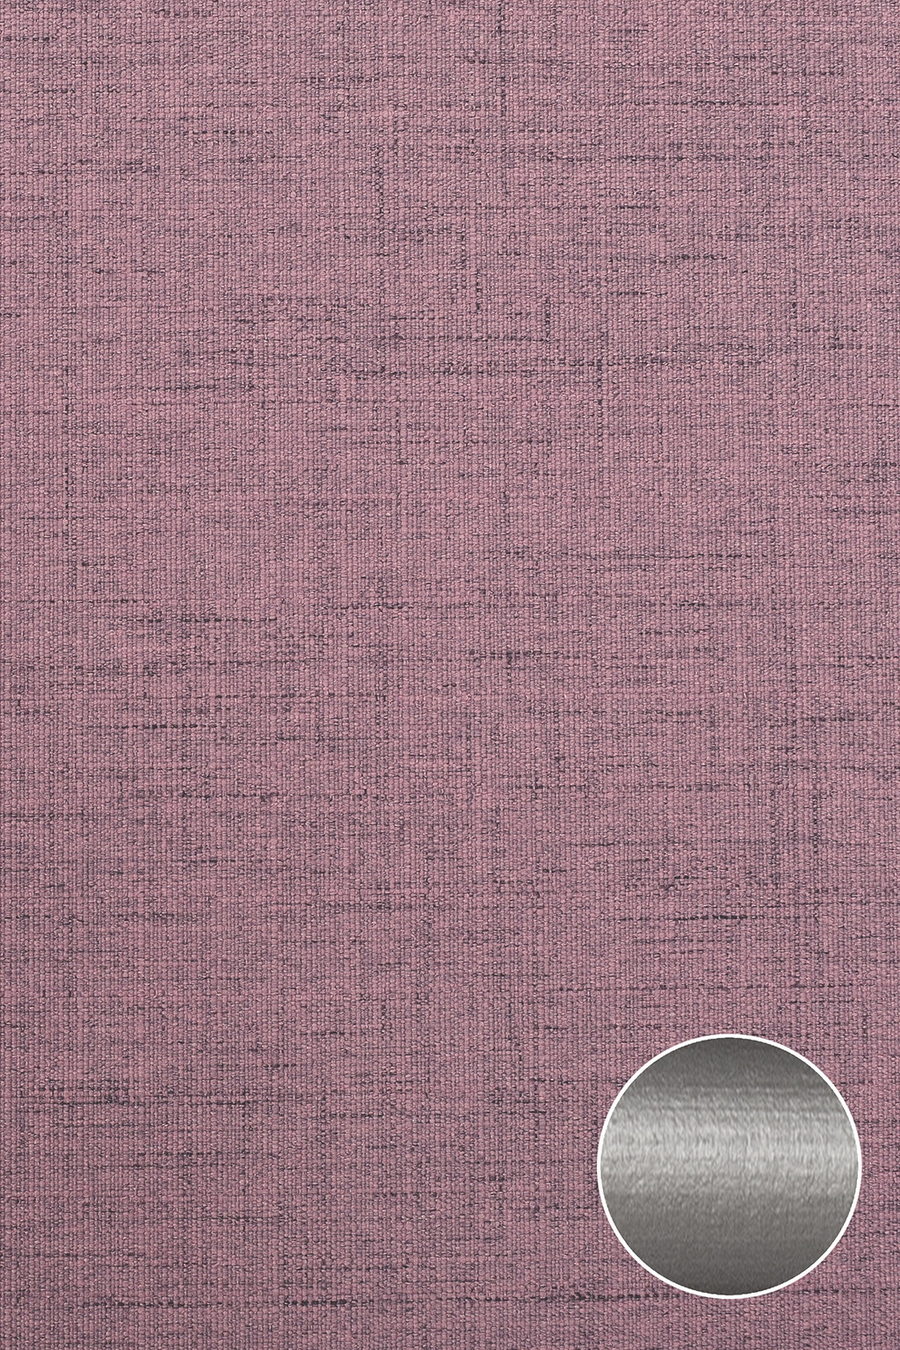 Ткань ESTERA розовый 70308 для рольштор